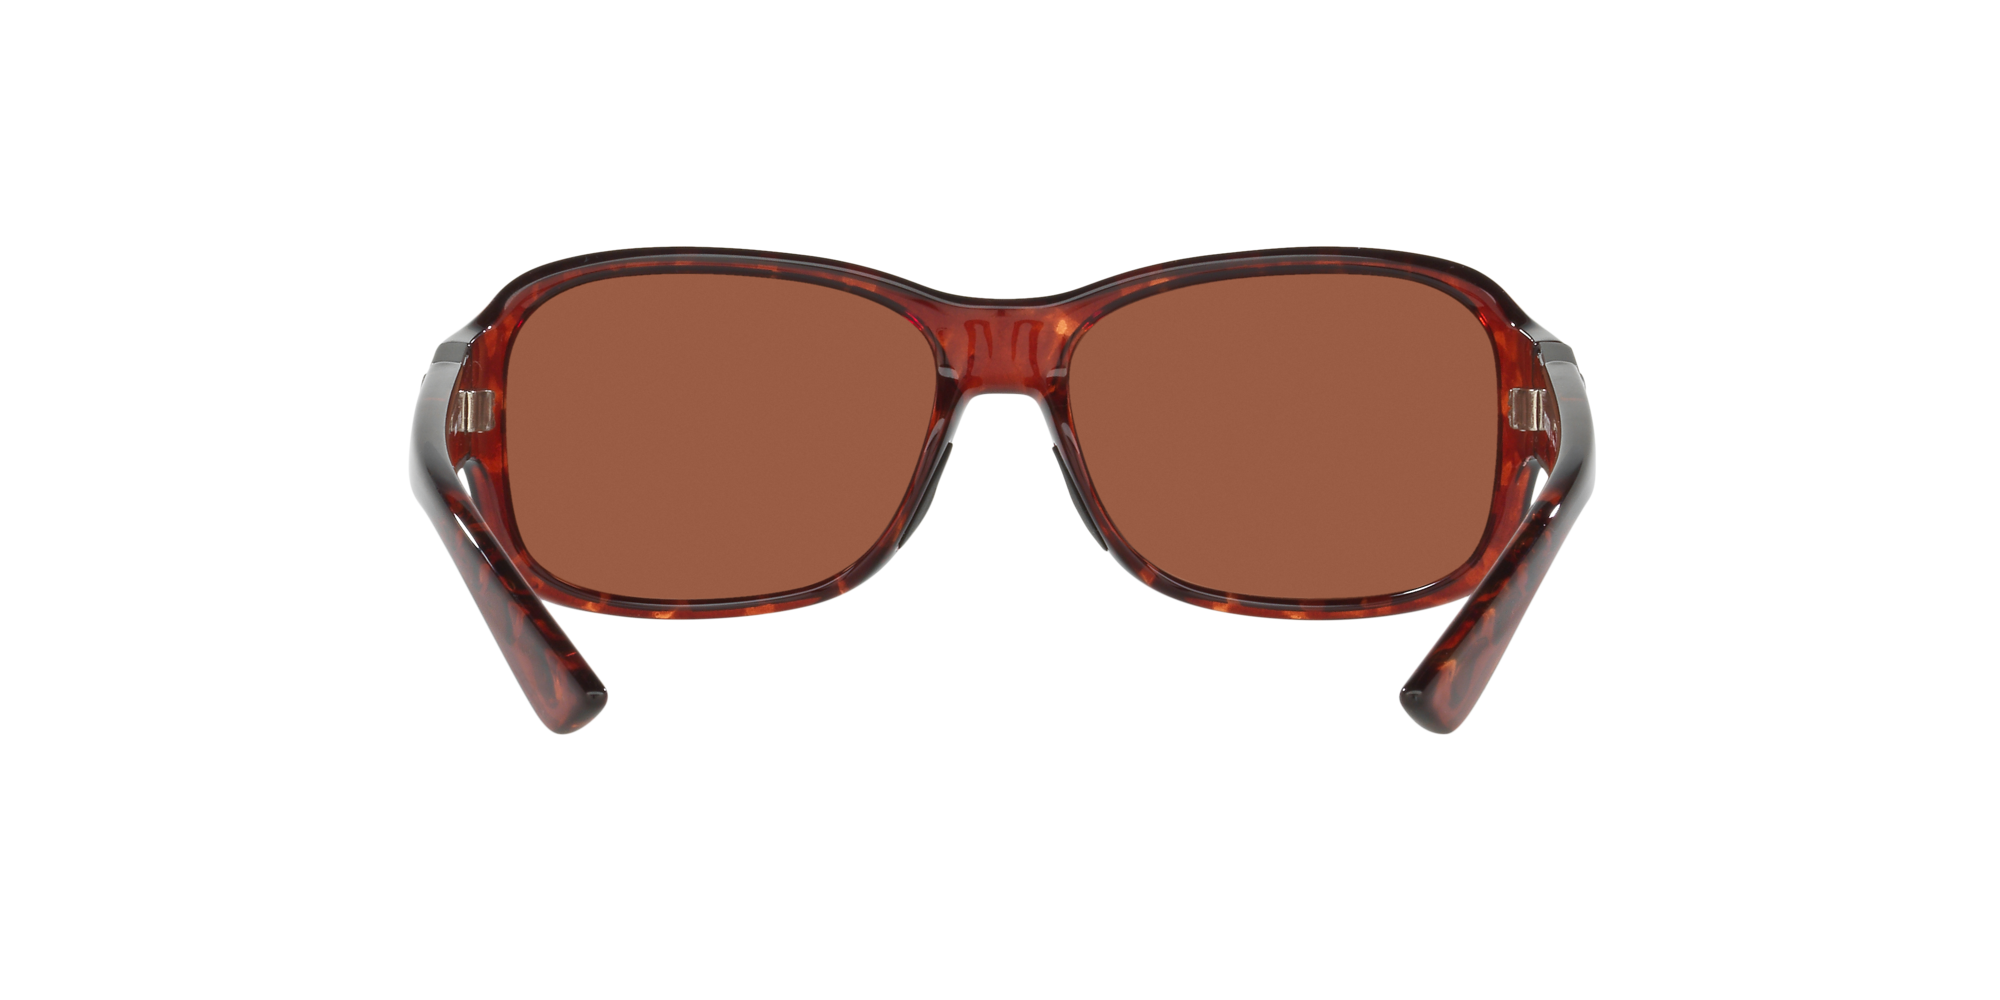 discount 73% Multicolored Single NoName sunglasses WOMEN FASHION Accessories Sunglasses 